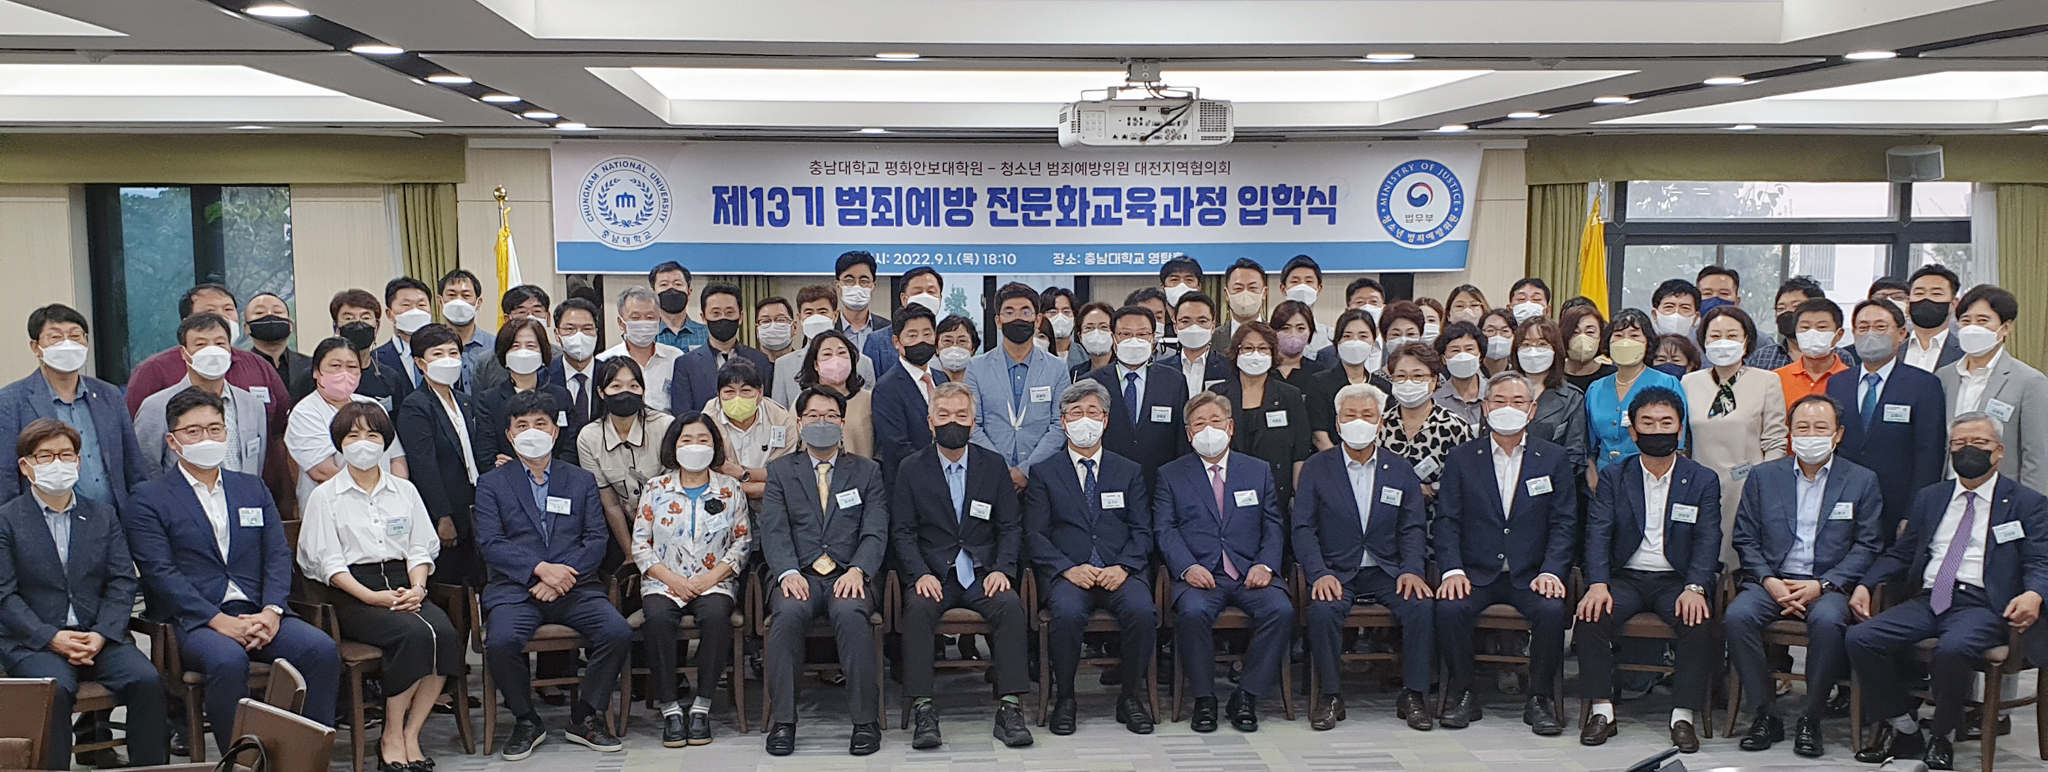 제13기 범죄예방 전문화교육 과정 입학식 개최 사진